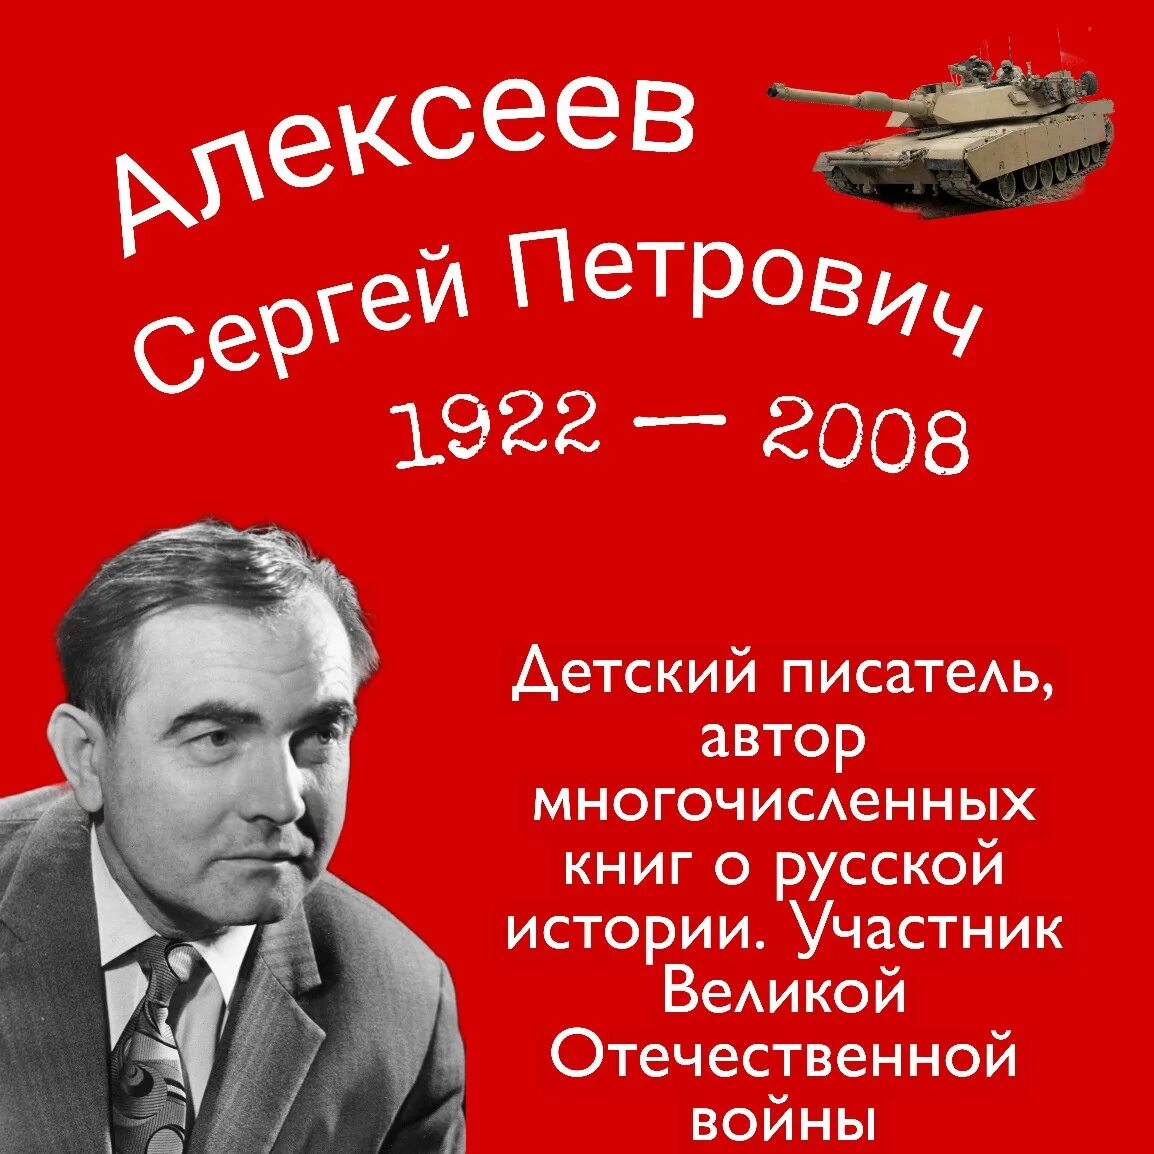 Сергея Петровича Алексеева (1922–2008).